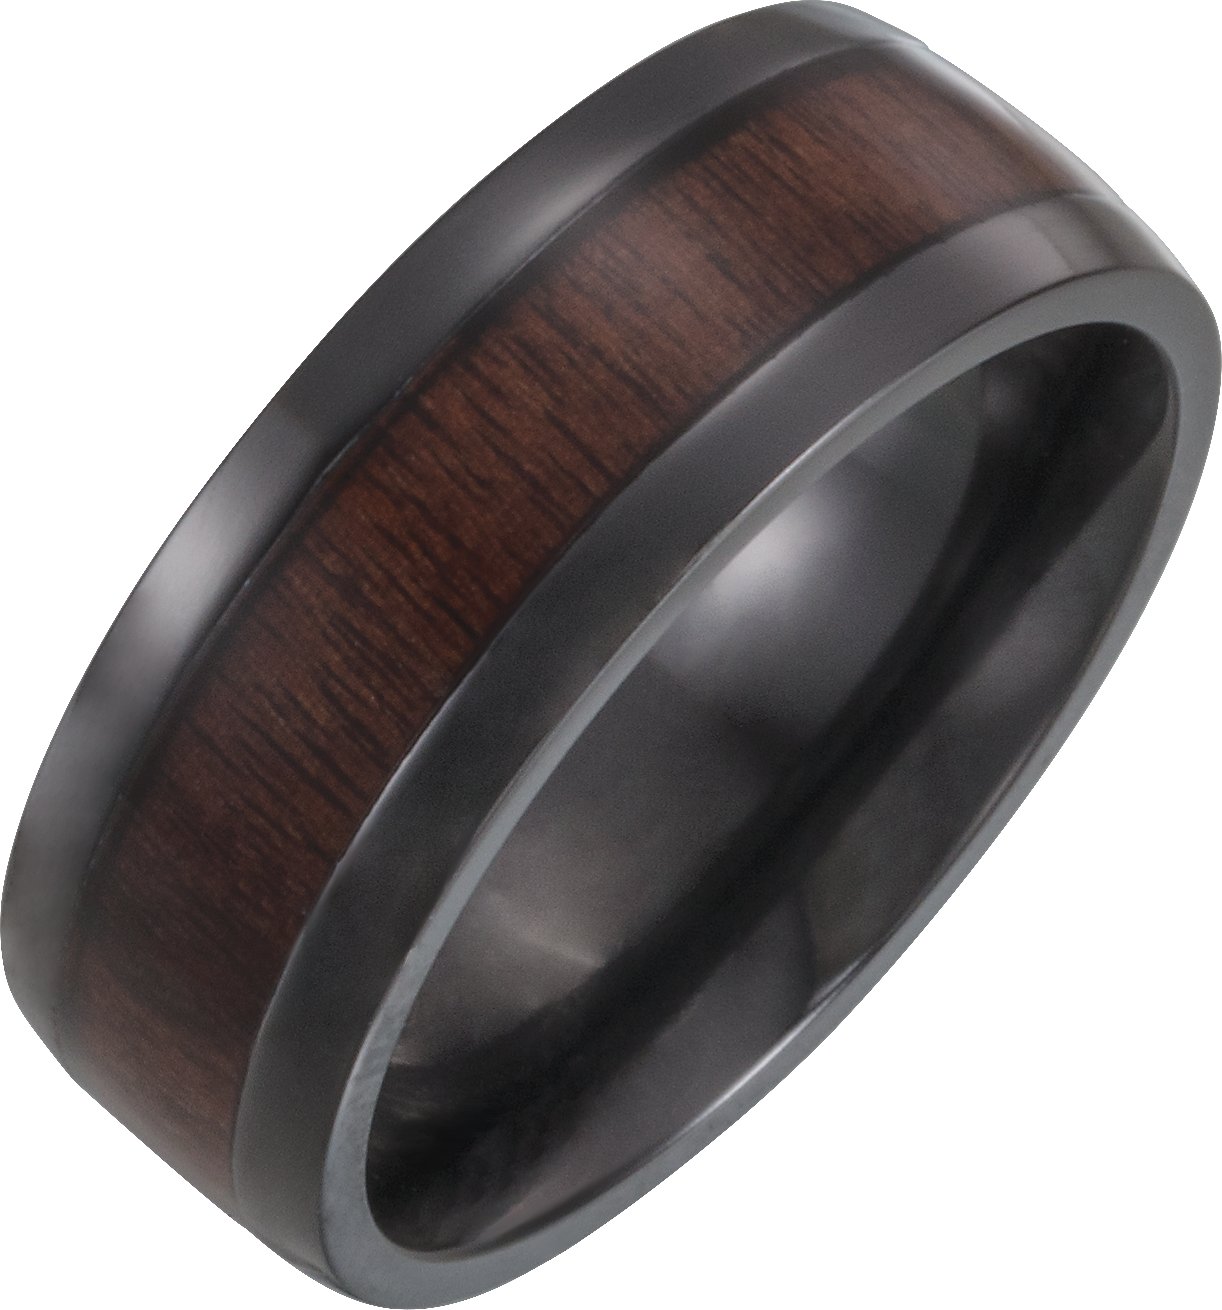 Black Titanium 8 mm Beveled-Edge Band with Wood Inlay Size 8.5